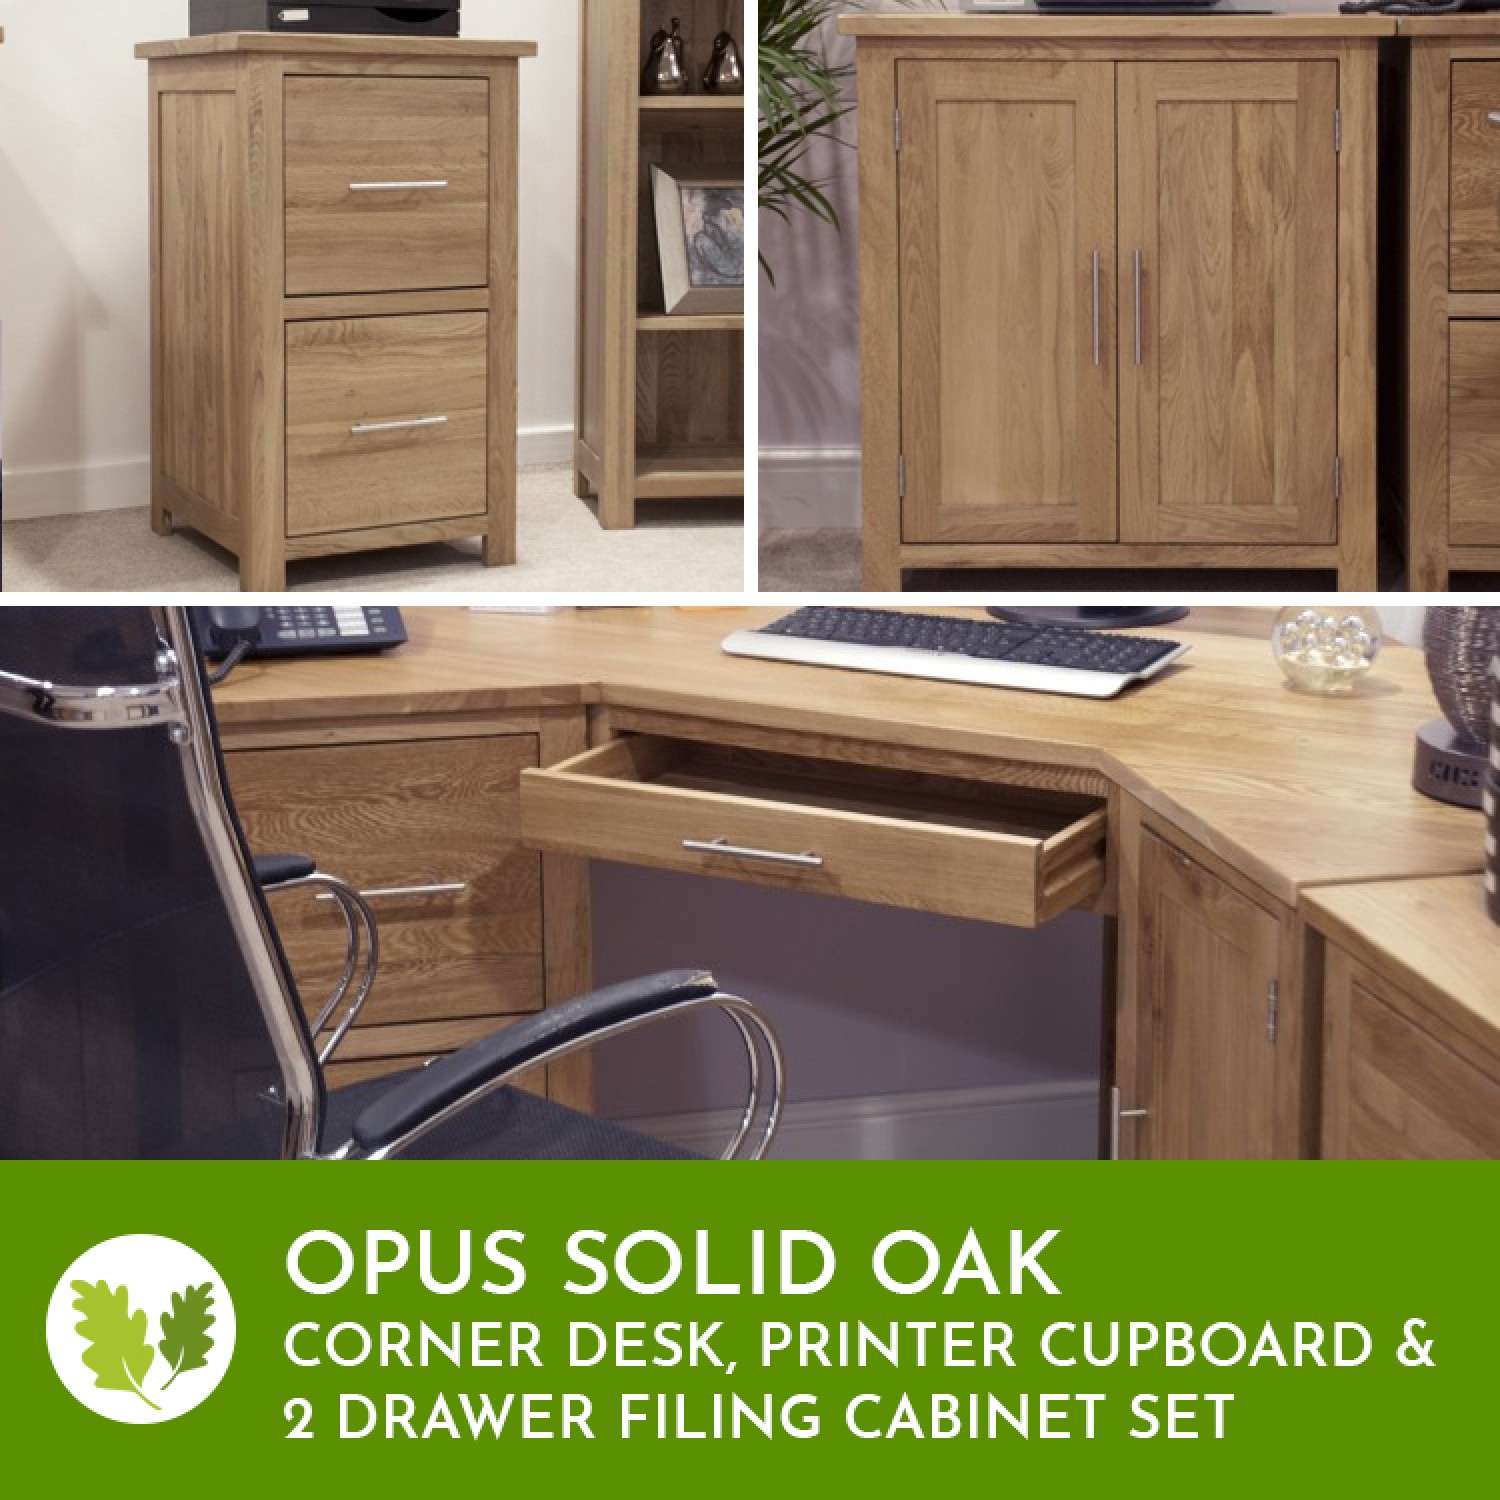 Opus Solid Oak Corner Desk Filing Cabinet Printer Cupboard Set